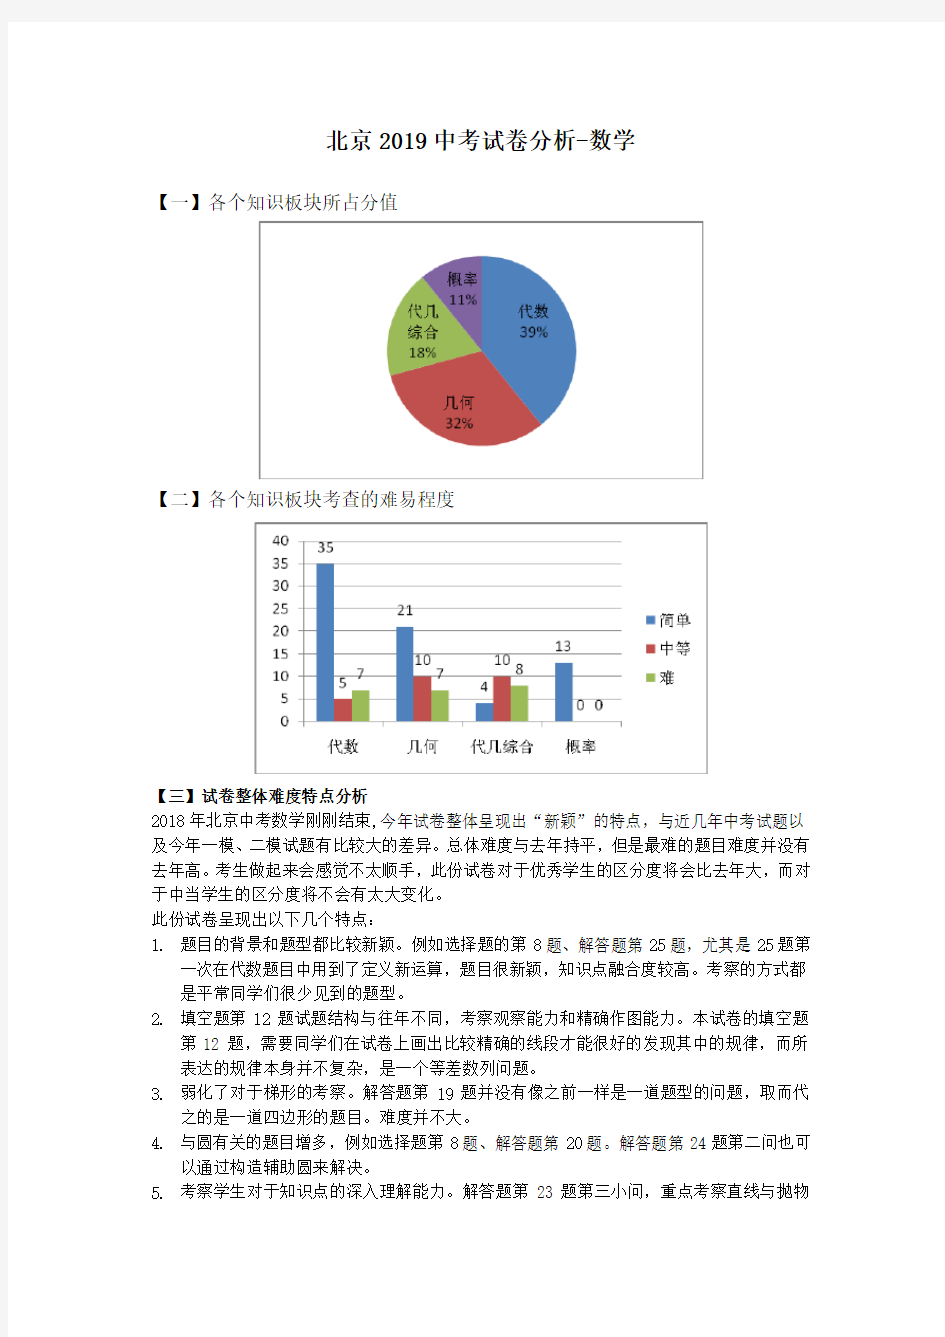 (完整版)北京2019中考试卷分析-数学